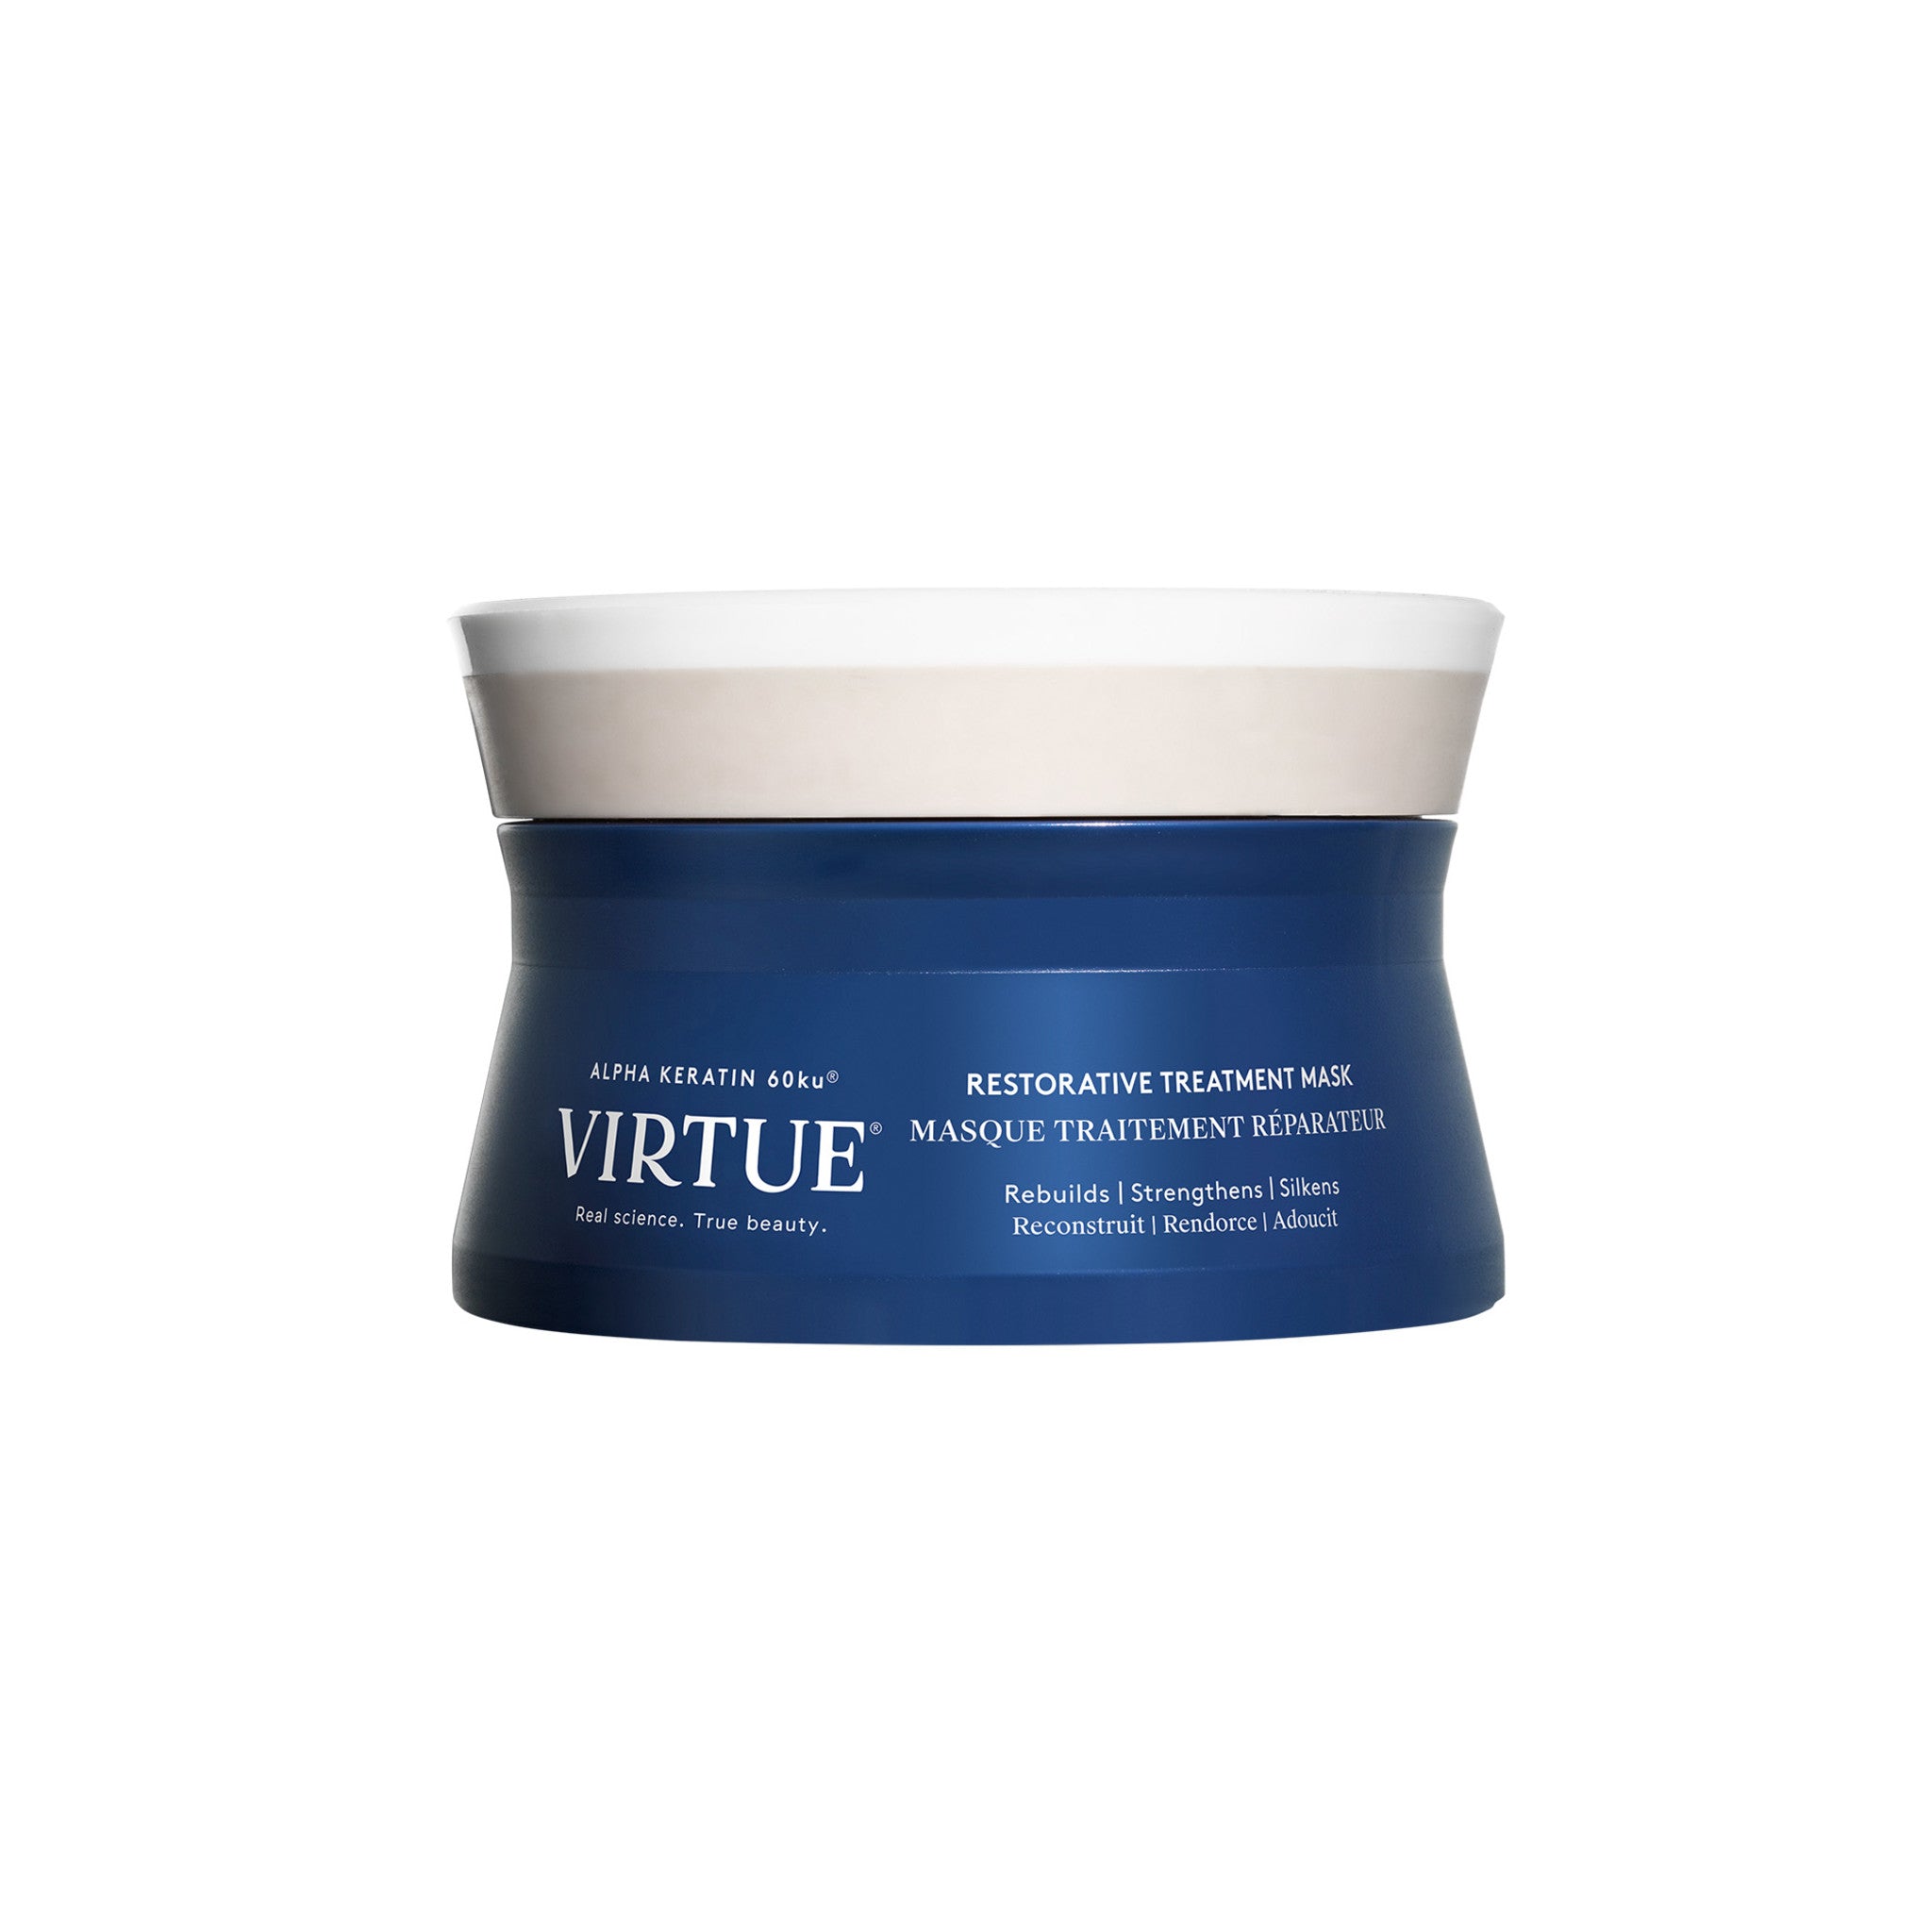 Virtue Restorative Treatment Mask Size variant: 3.4 oz main image.